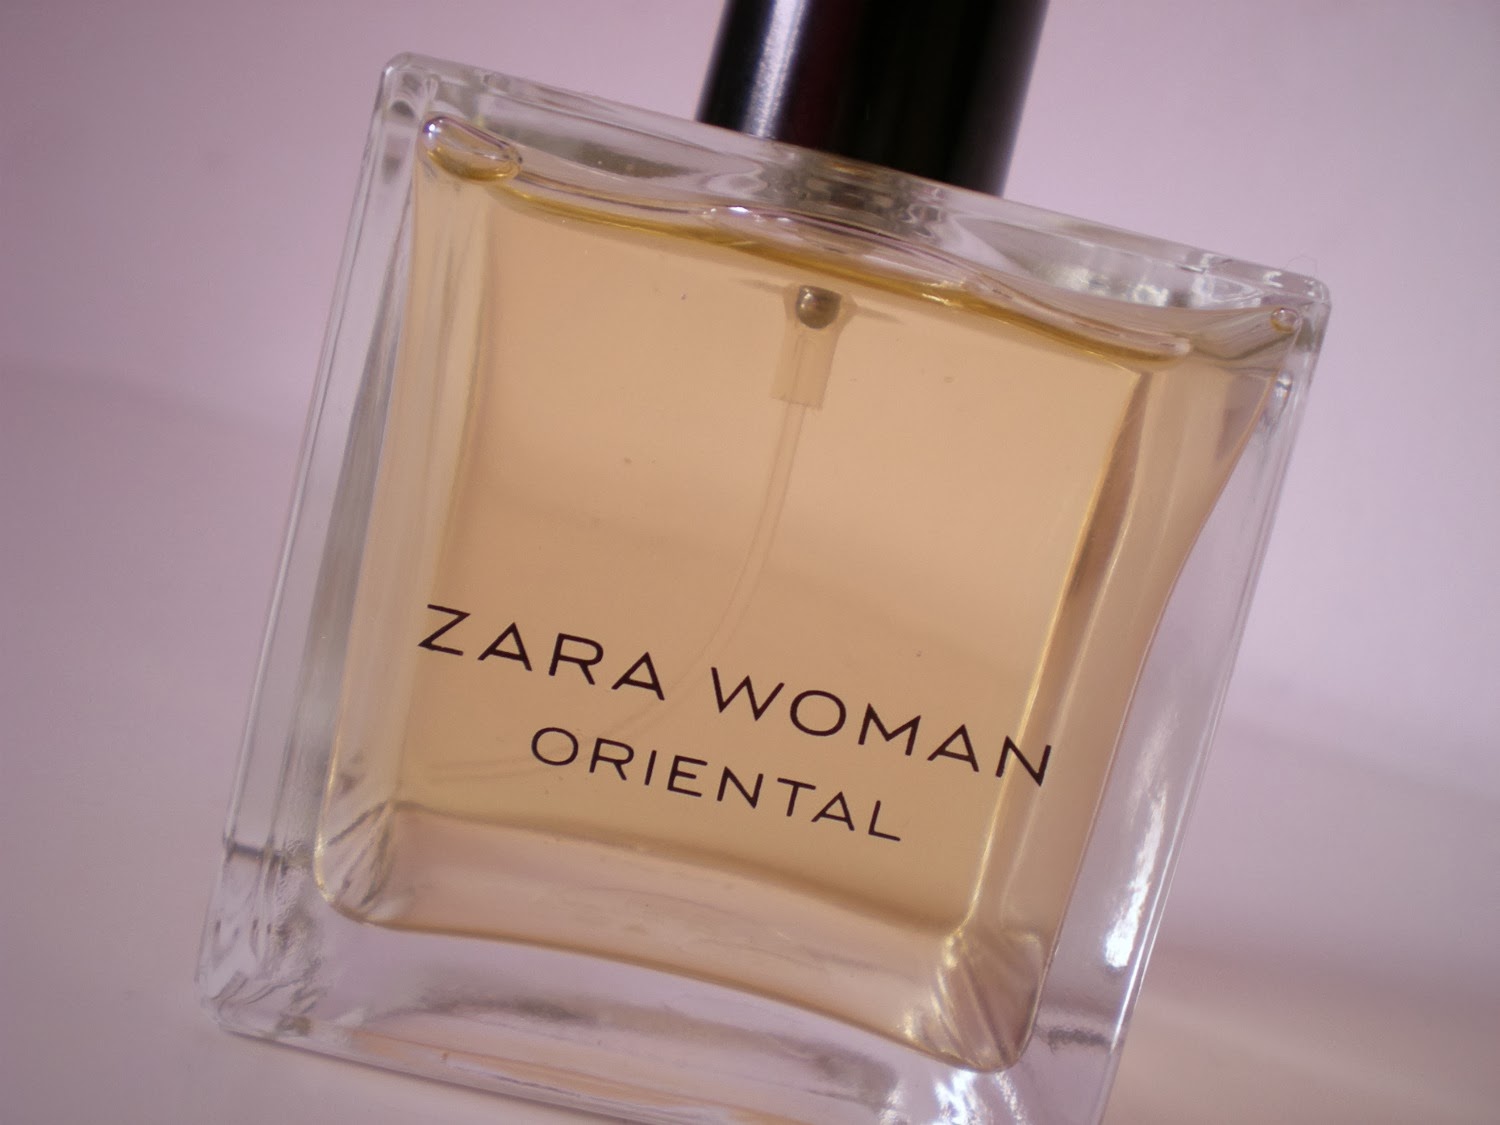 BEAUTY | Zara Woman Oriental